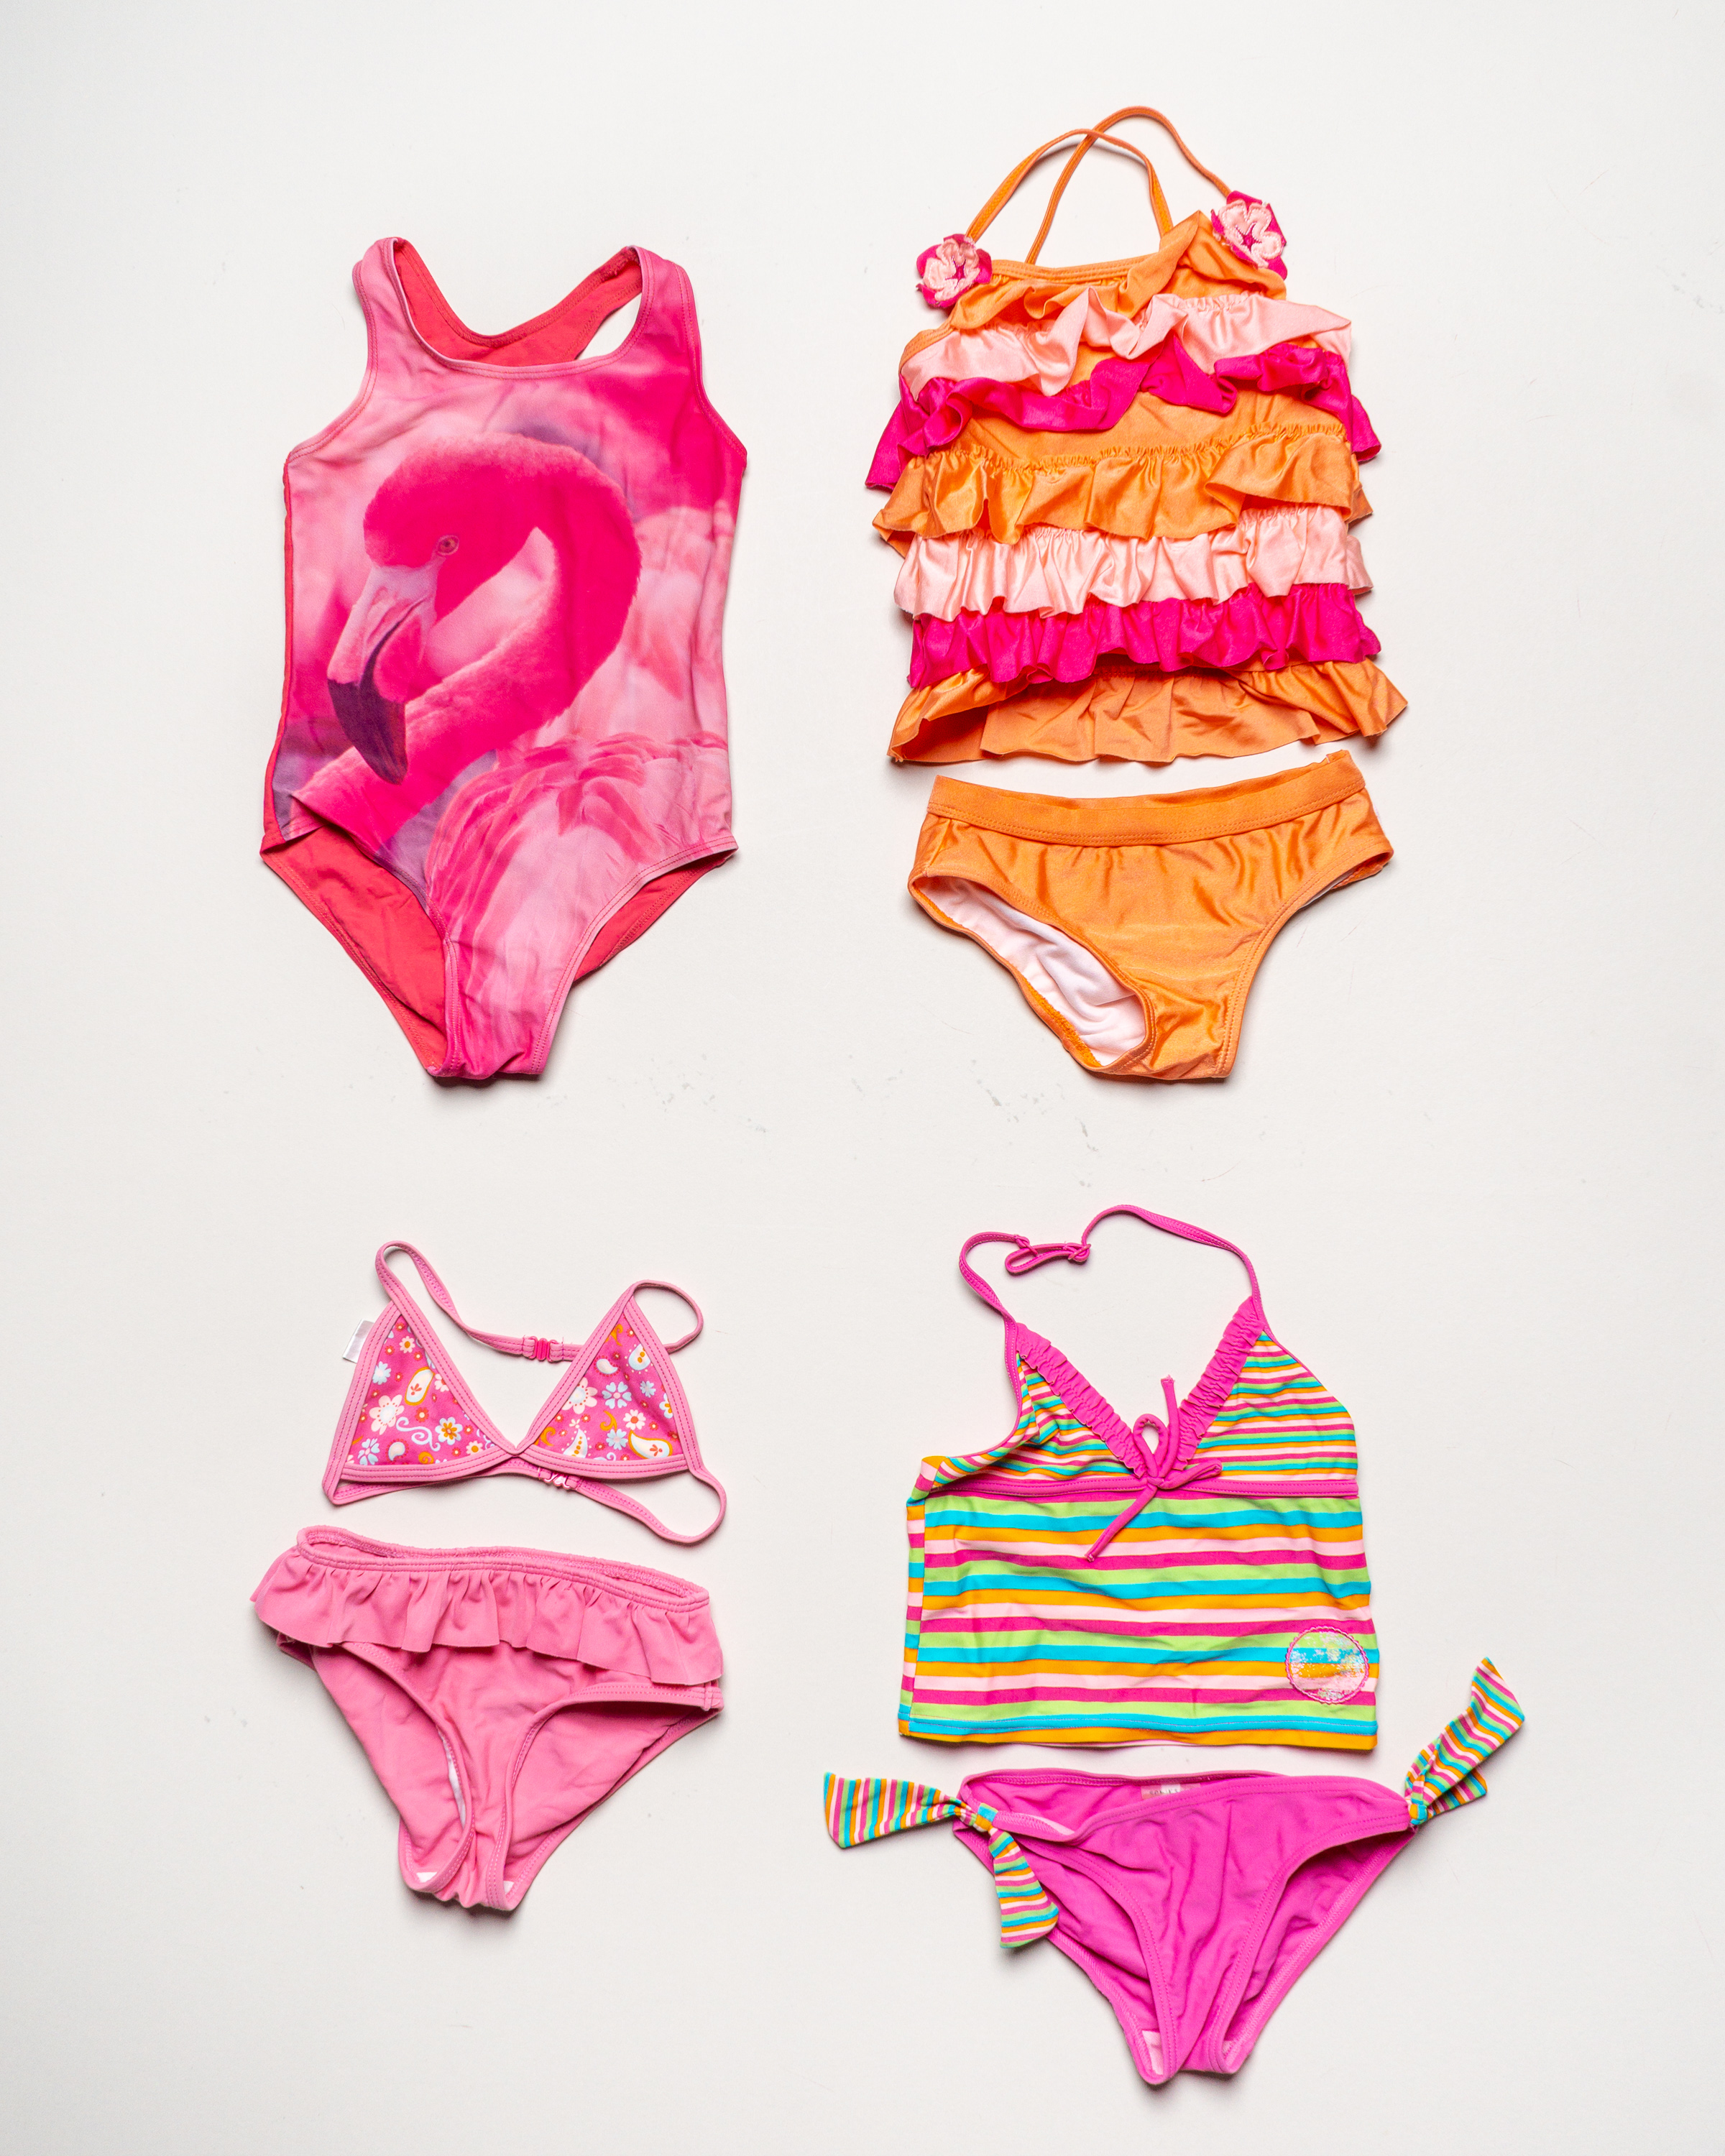 1x Badekleidung Gr. 116 – Schwimmsachen Badeanzug Bikini Rüschen Pink Orange Flamingo